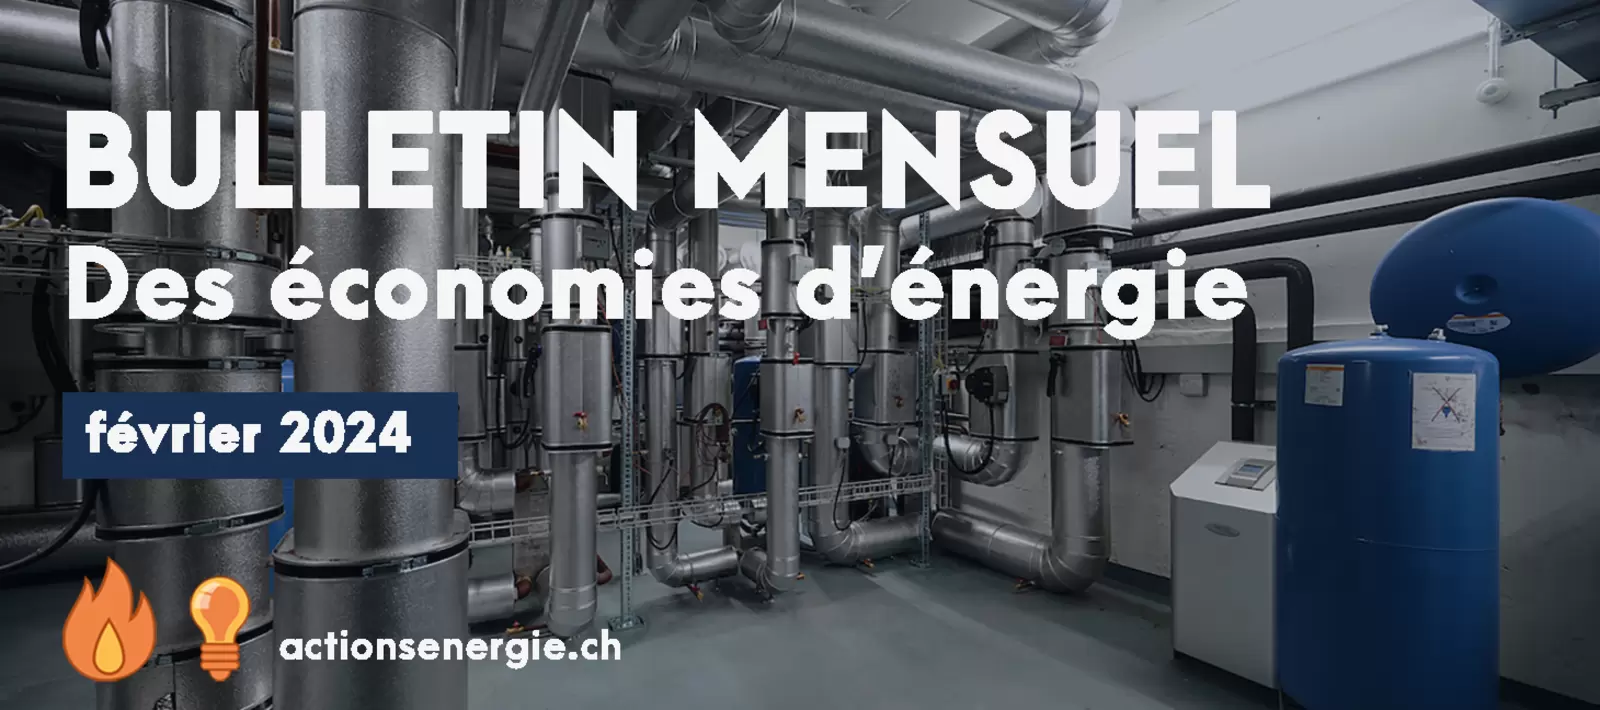 Economies d'énergie à Genève - Bulletin de février 2024